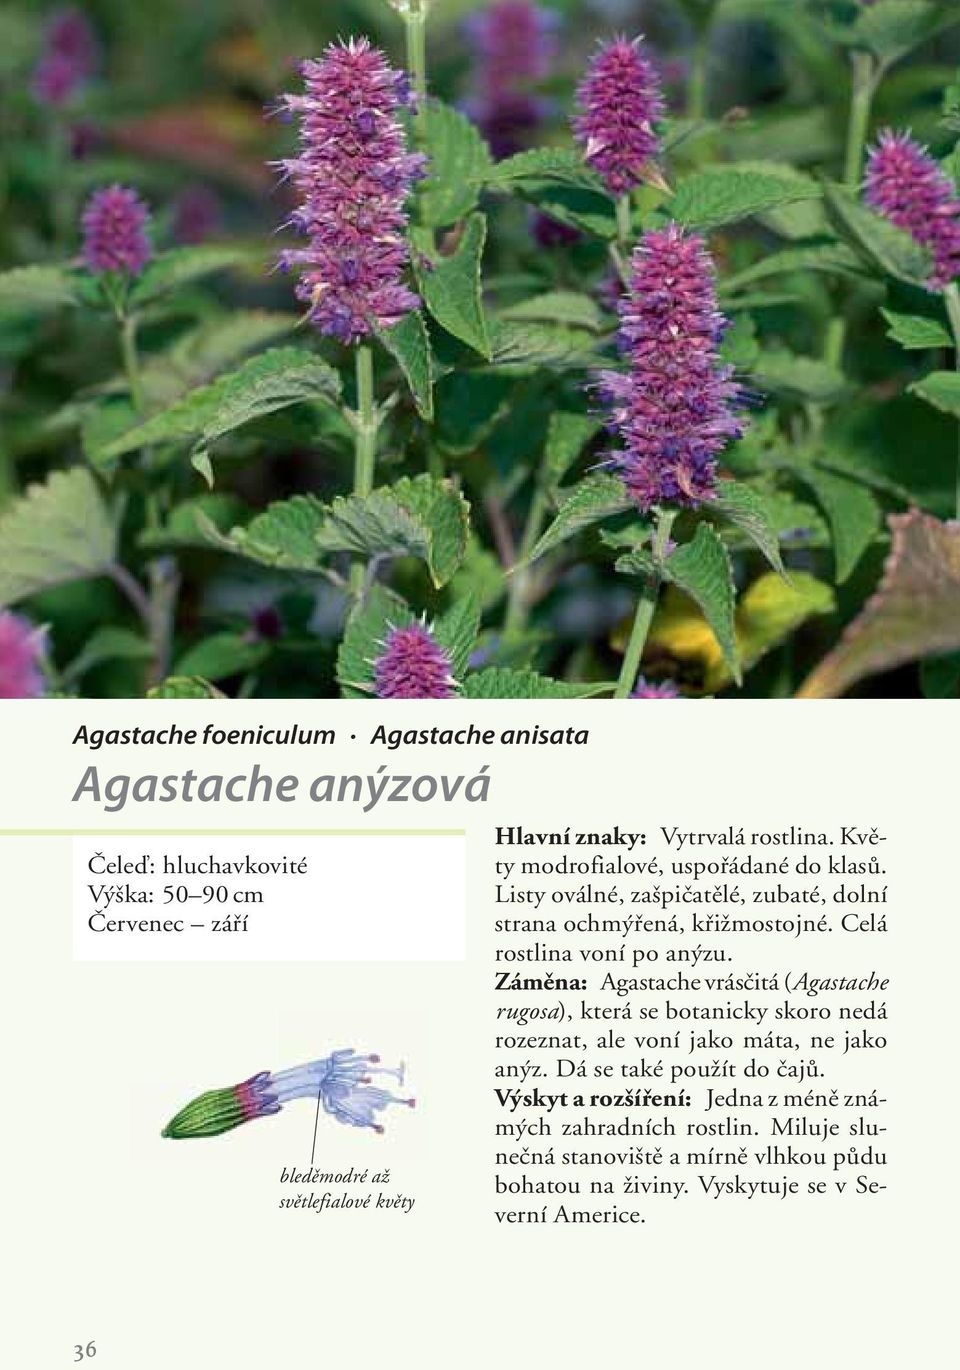 Celá rostlina voní po anýzu. Záměna: Agastache vrásčitá (Agastache rugosa), která se botanicky skoro nedá rozeznat, ale voní jako máta, ne jako anýz.